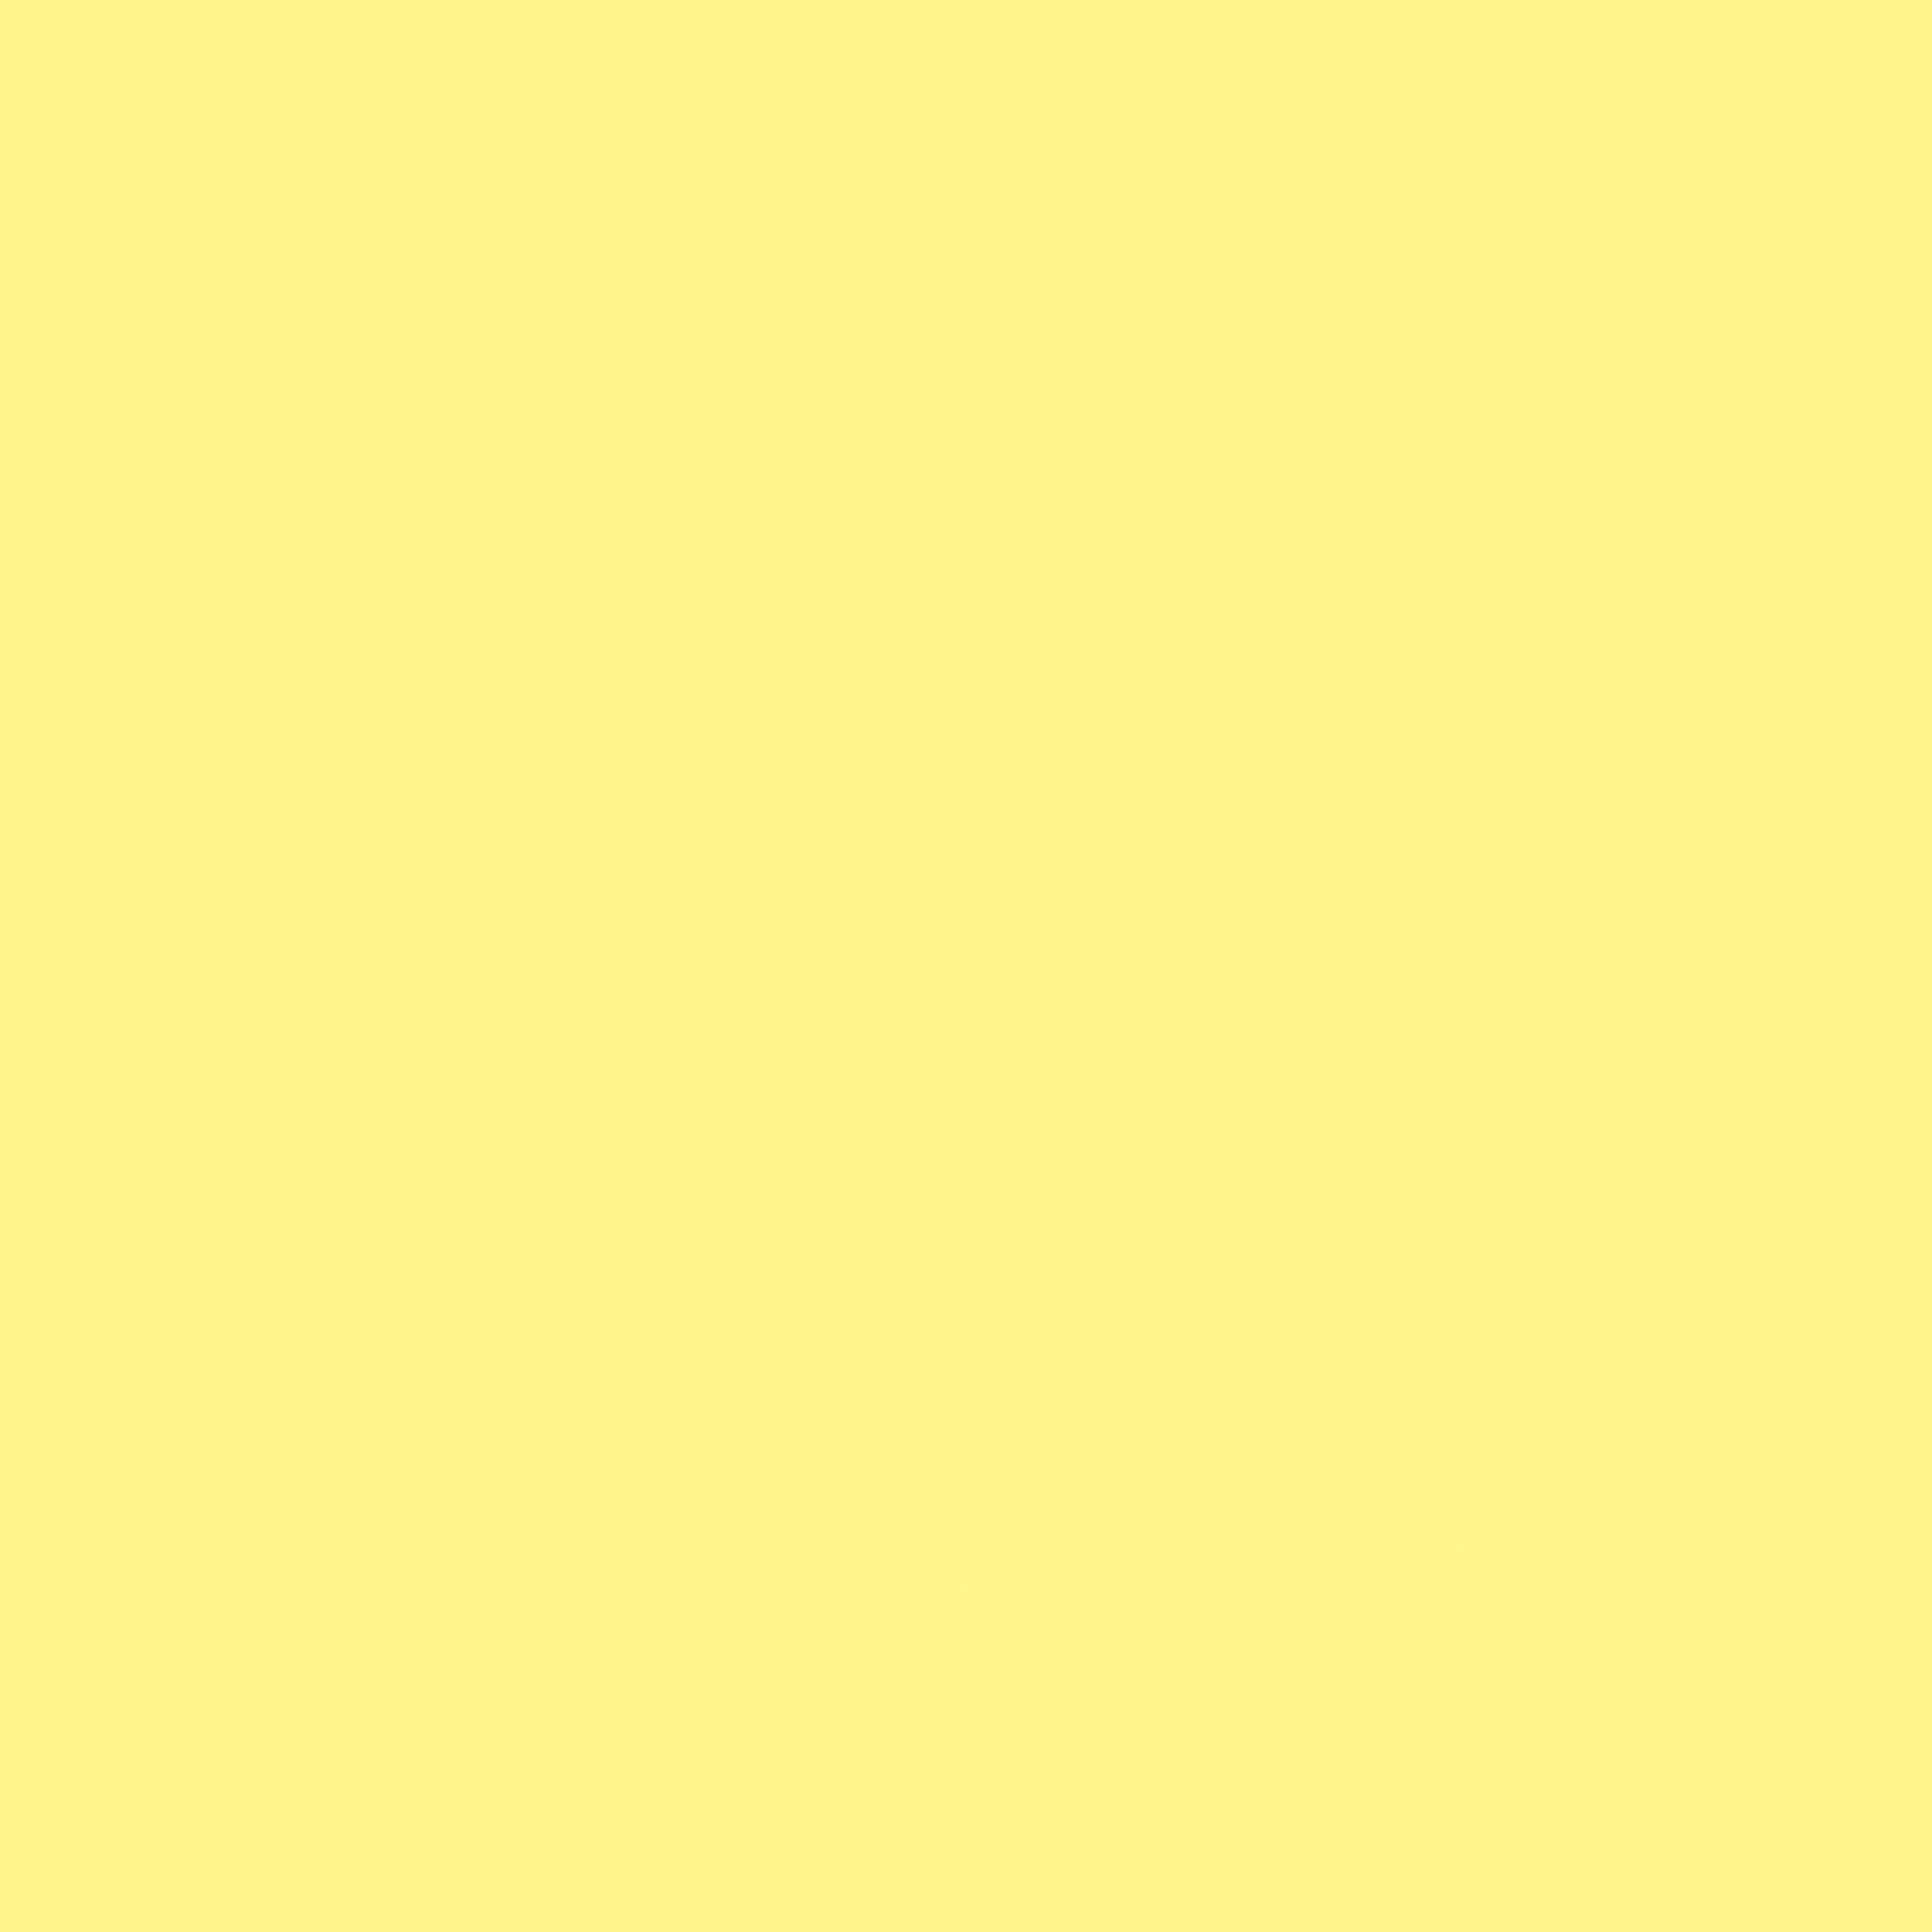 #colour_yellow sherbet